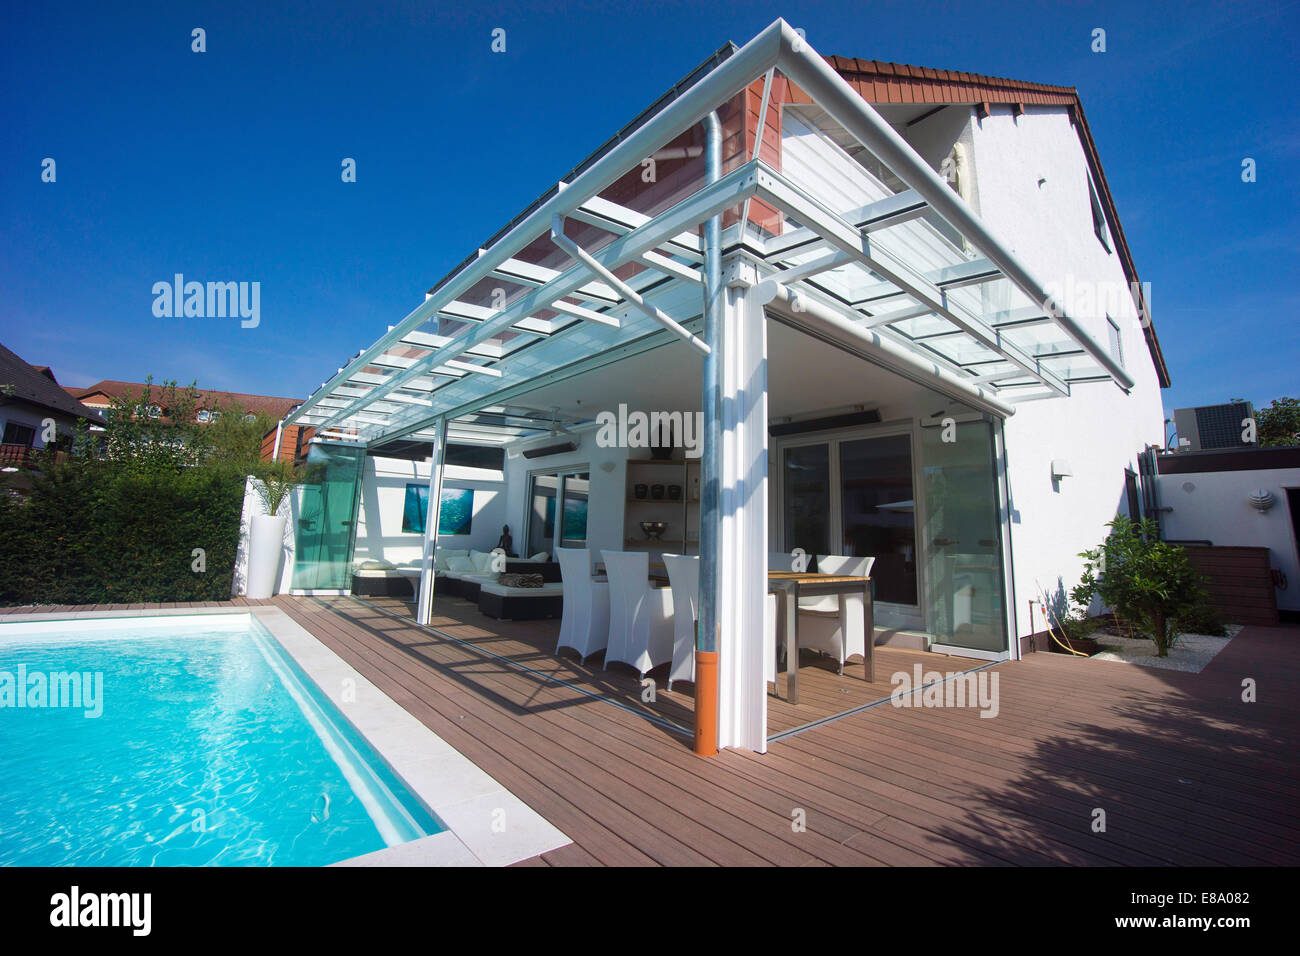 Maison privée avec une véranda, une piscine et une terrasse, Allemagne Banque D'Images